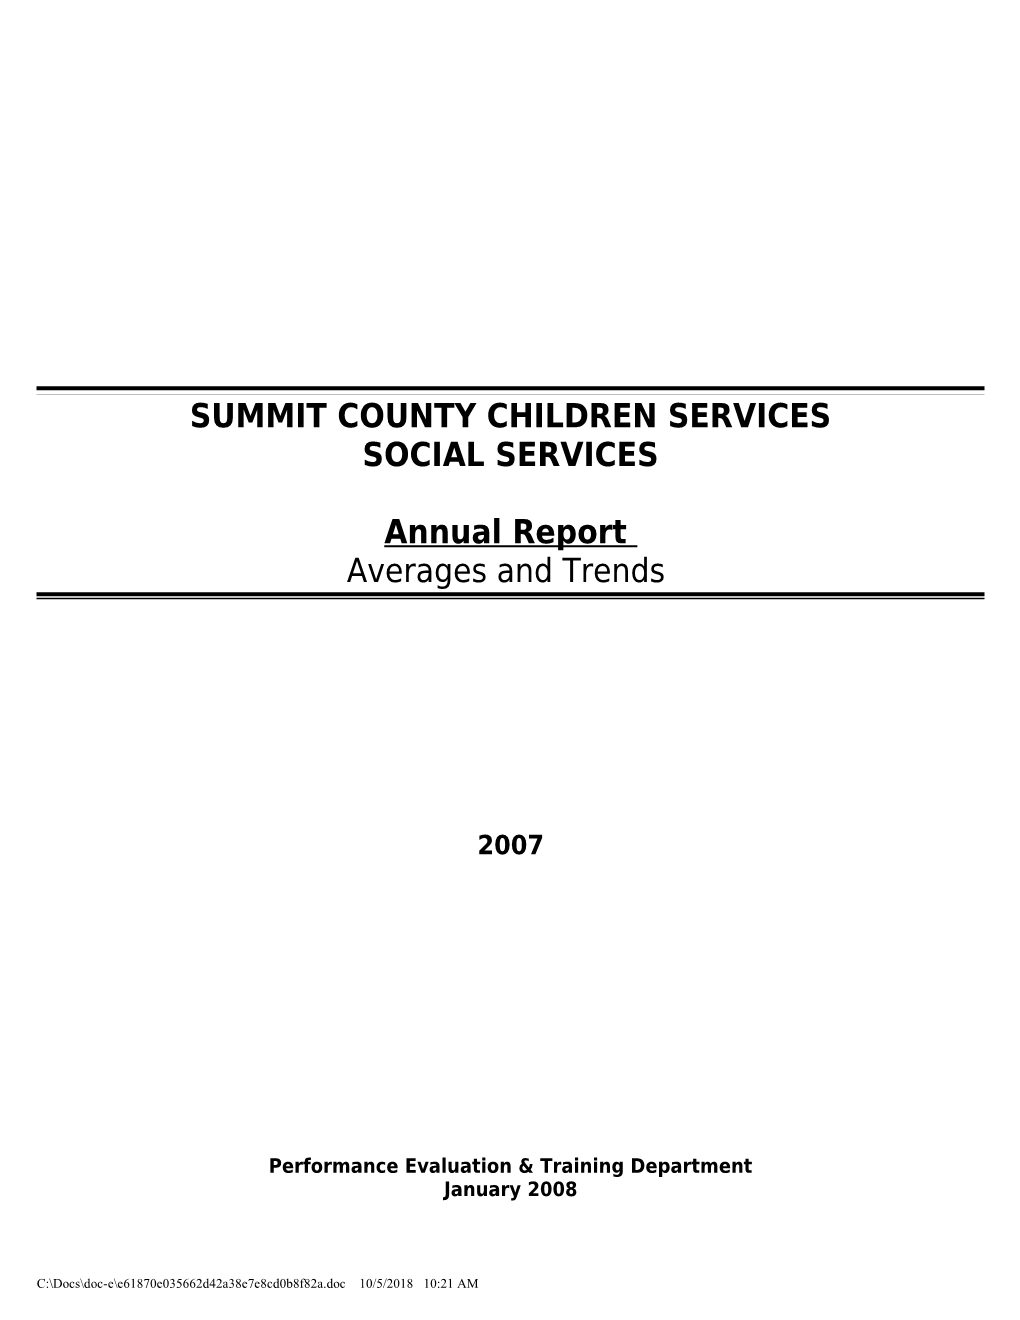 Summit County Children Services